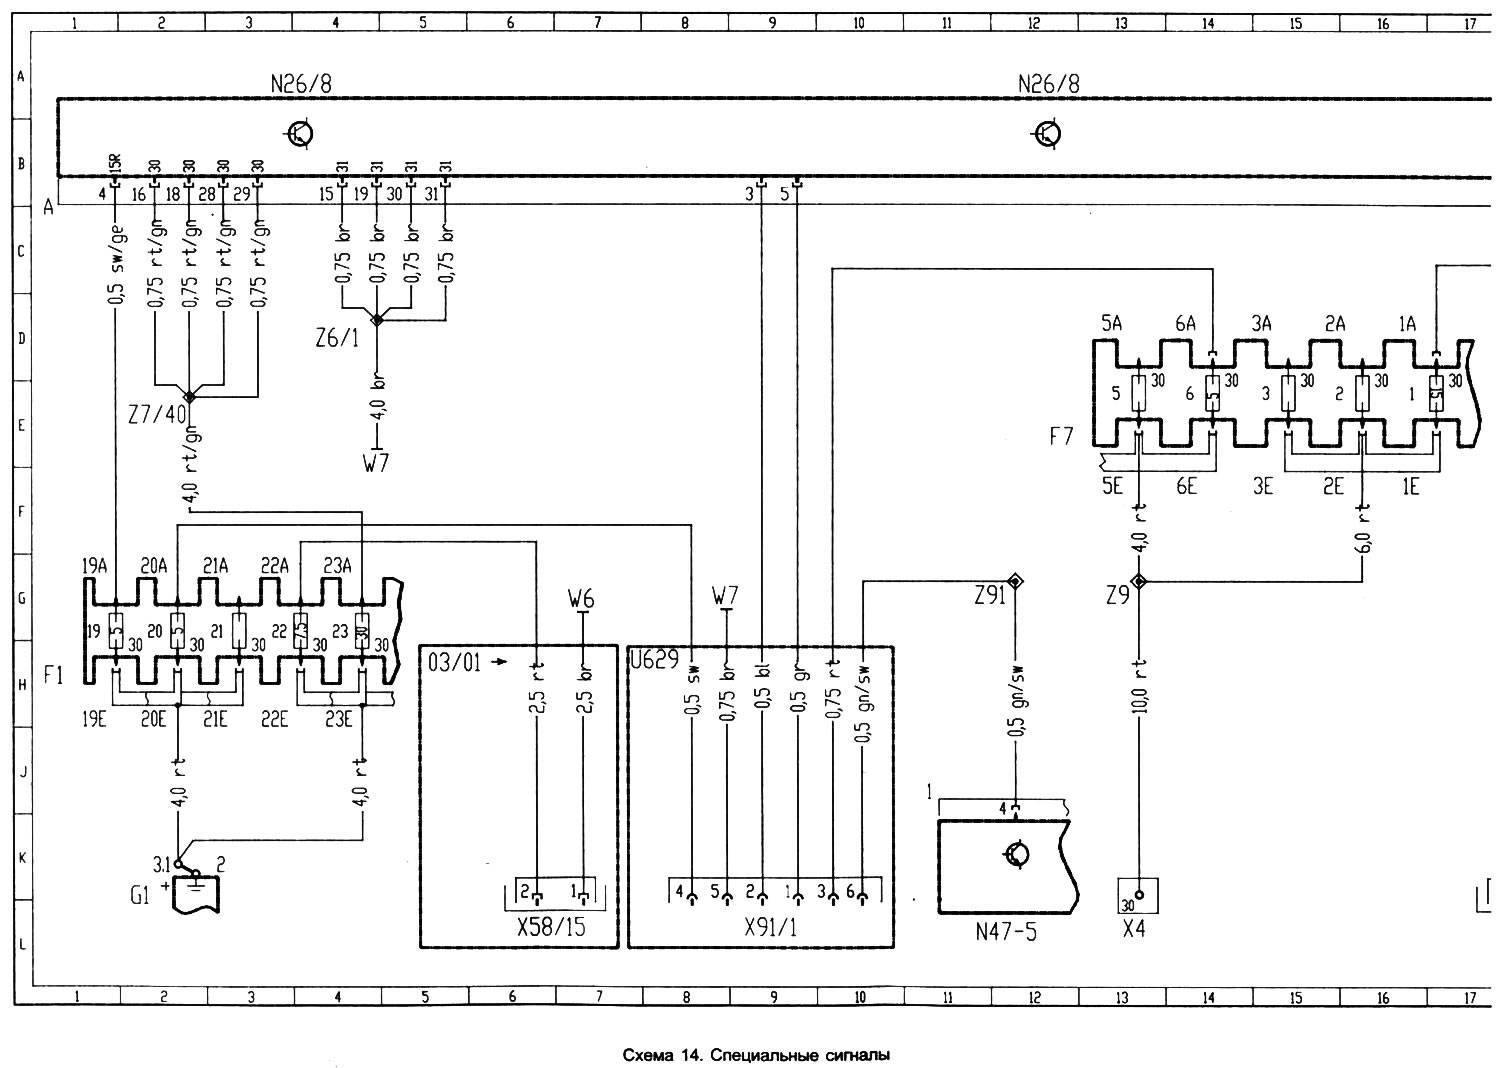 Электросхемы для начинающих. азбука радиоинженера: что такое принципиальная электрическая схема и как её читать